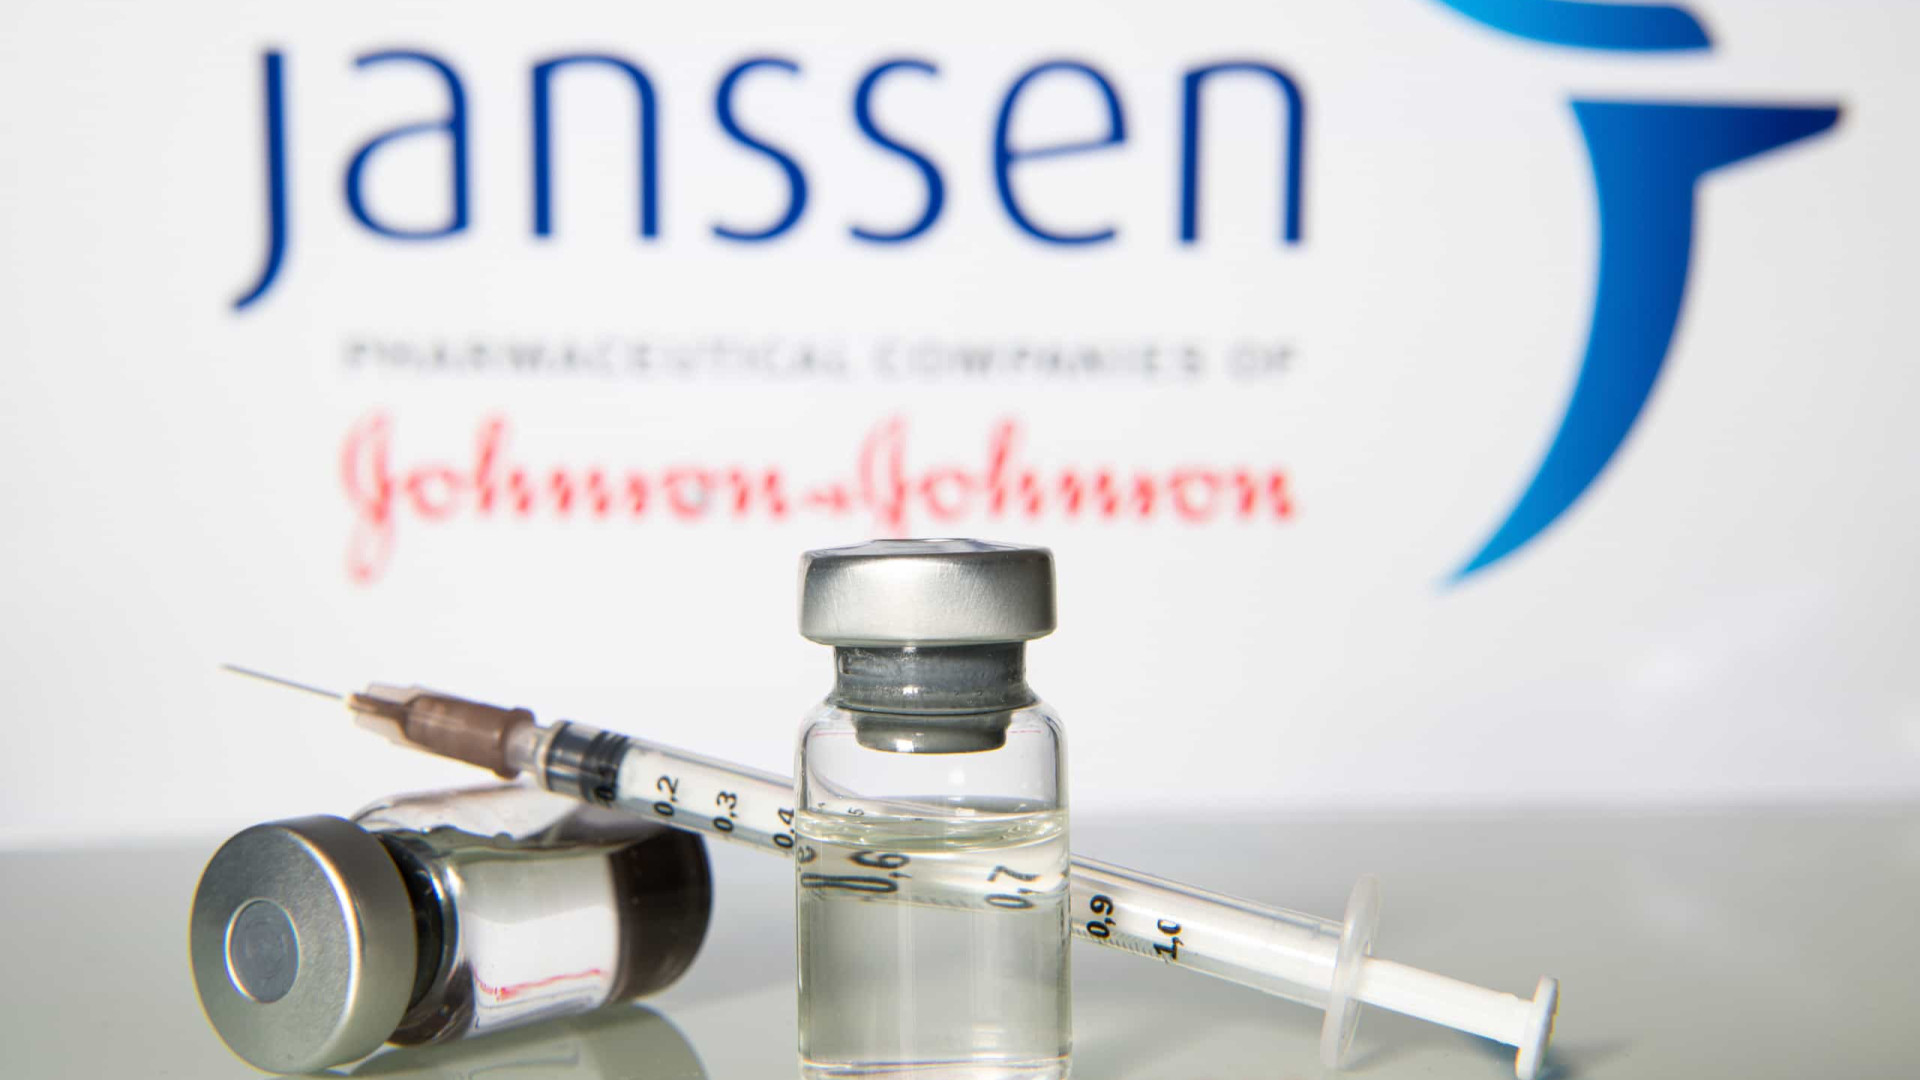 Vacinados da Janssen recebem orientações diferentes sobre reforço em cada cidade